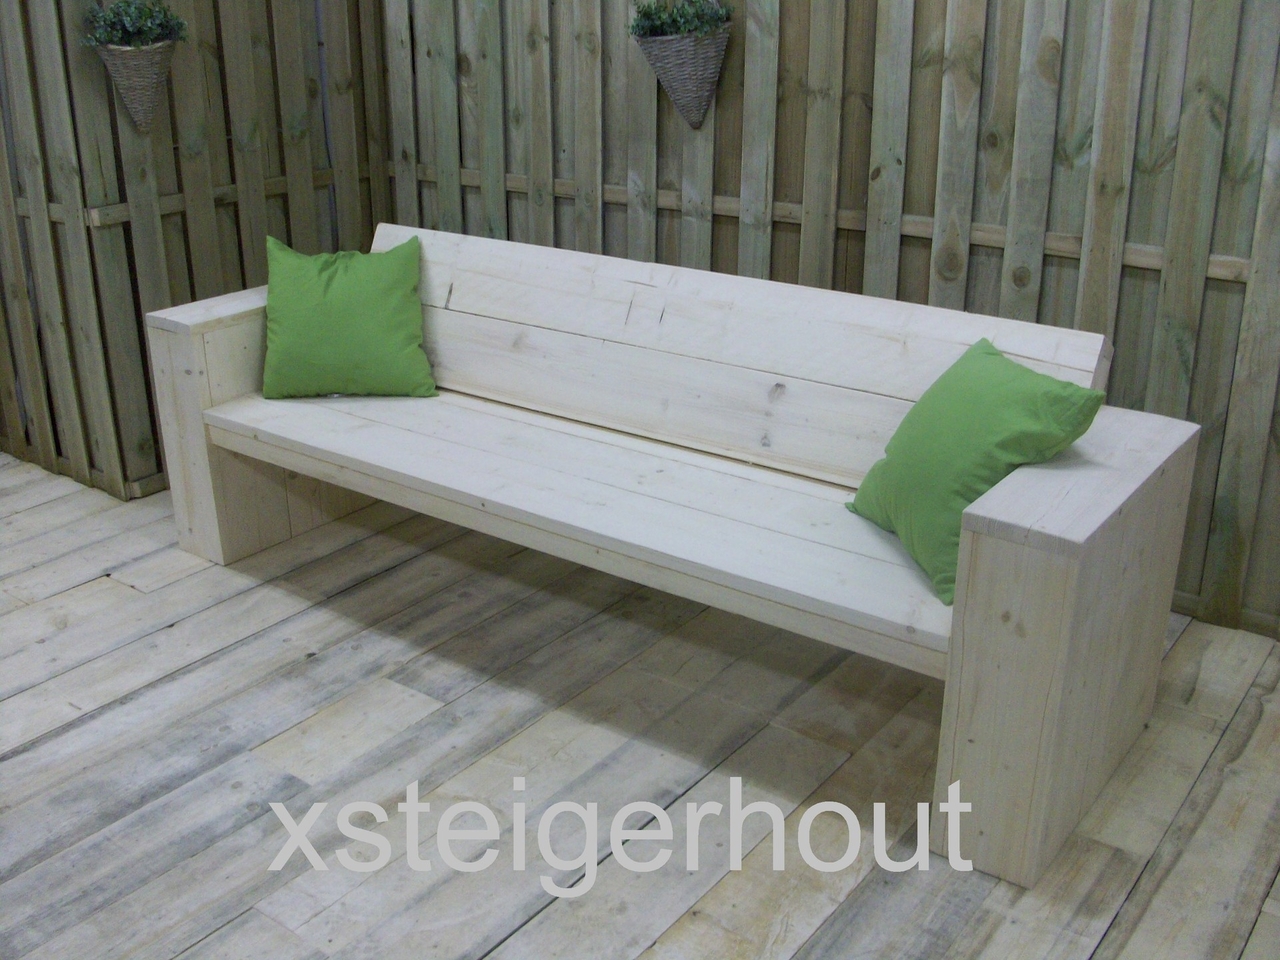 steigerhout bouwpakket v.a. 125,- xsteigerhout.nl - xsteigerhout